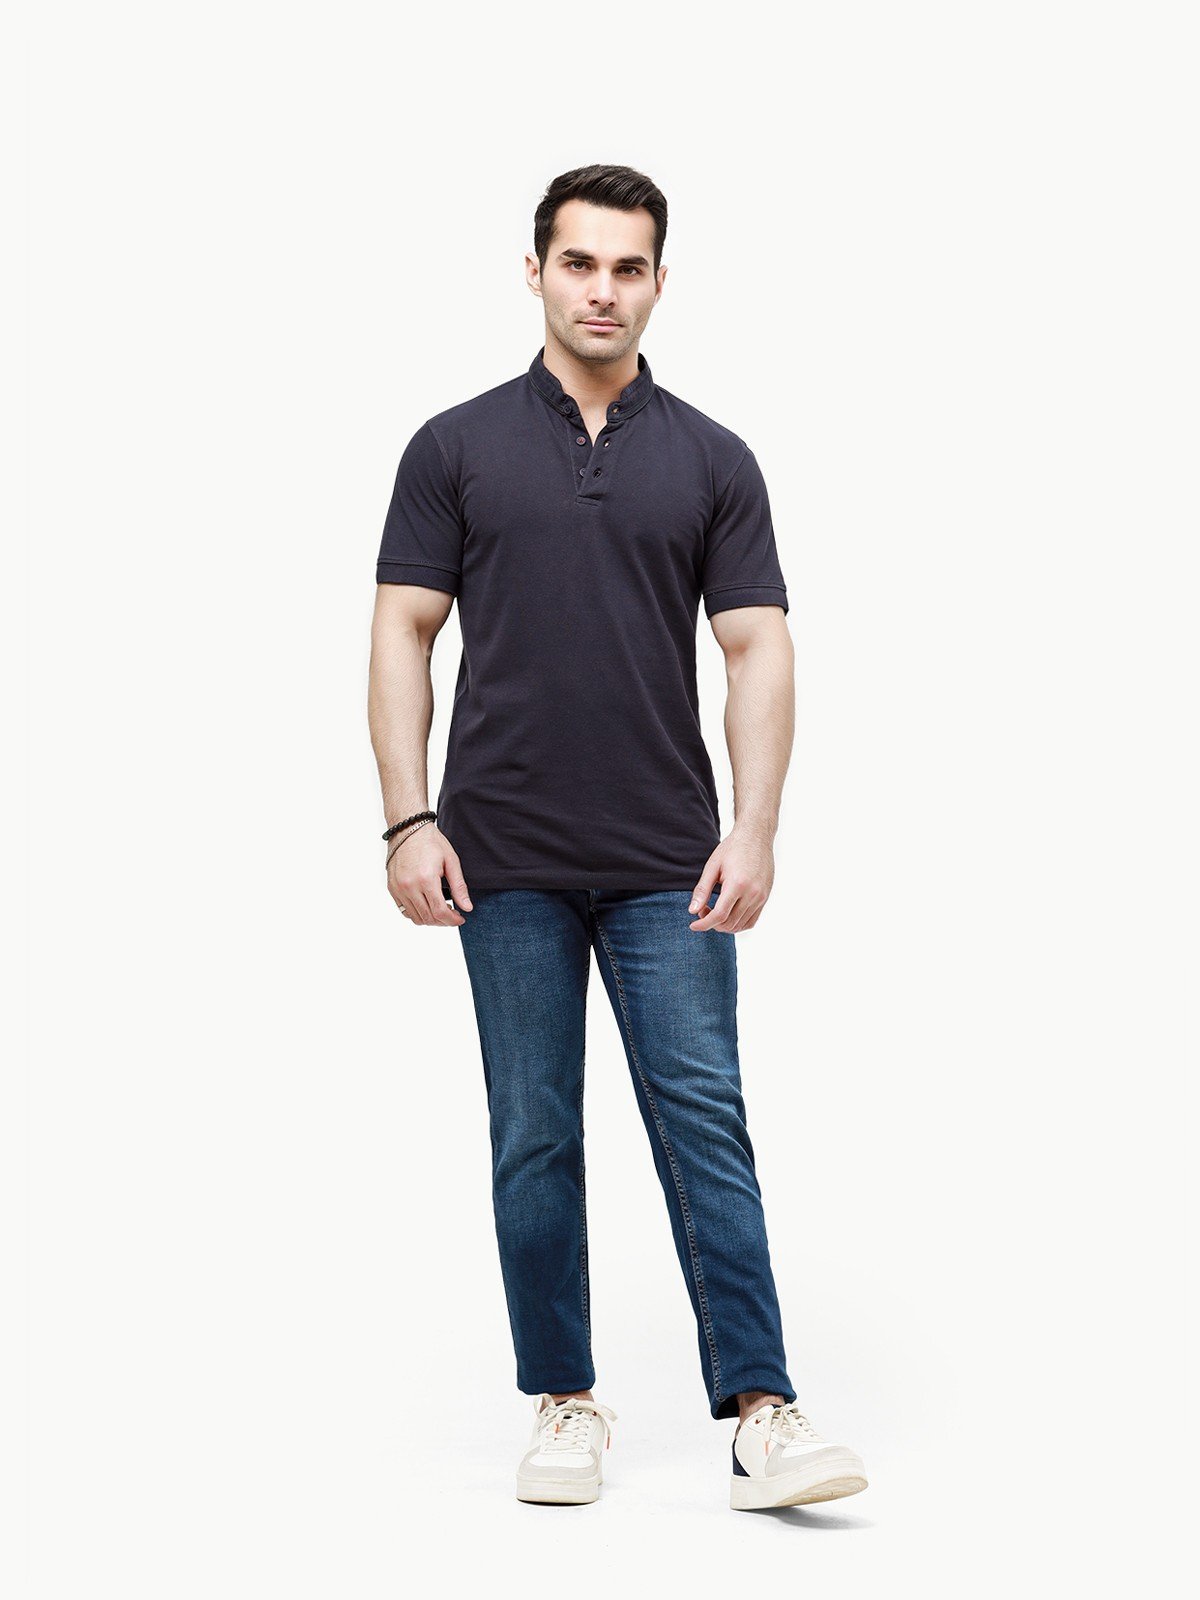 Men's Navy Polo Shirt - EMTPS23-019